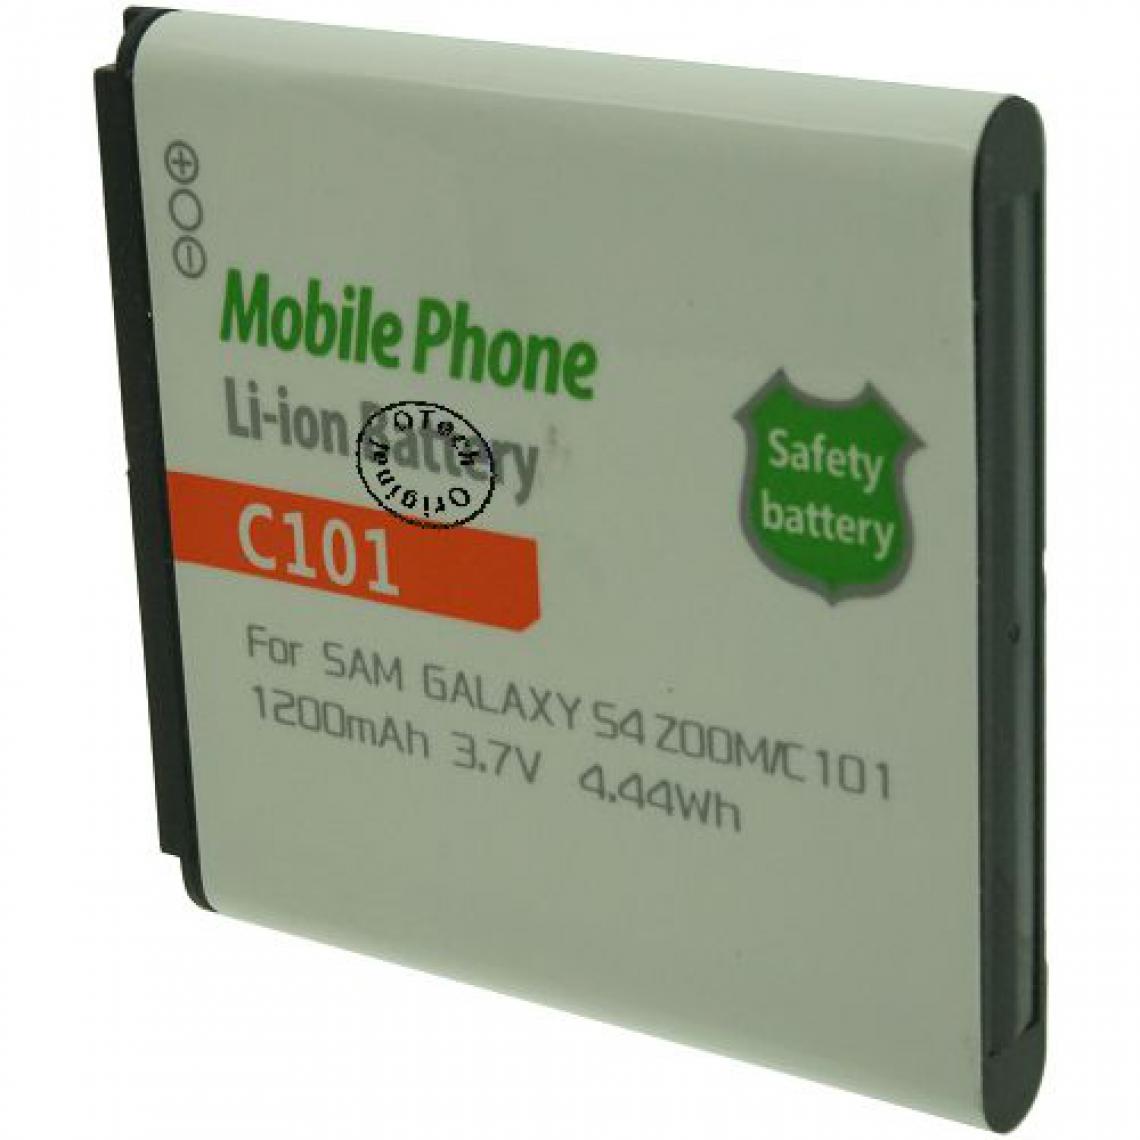 Otech - Batterie compatible pour SAMSUNG GALAXY S4 ZOOM SMC101 - Batterie téléphone